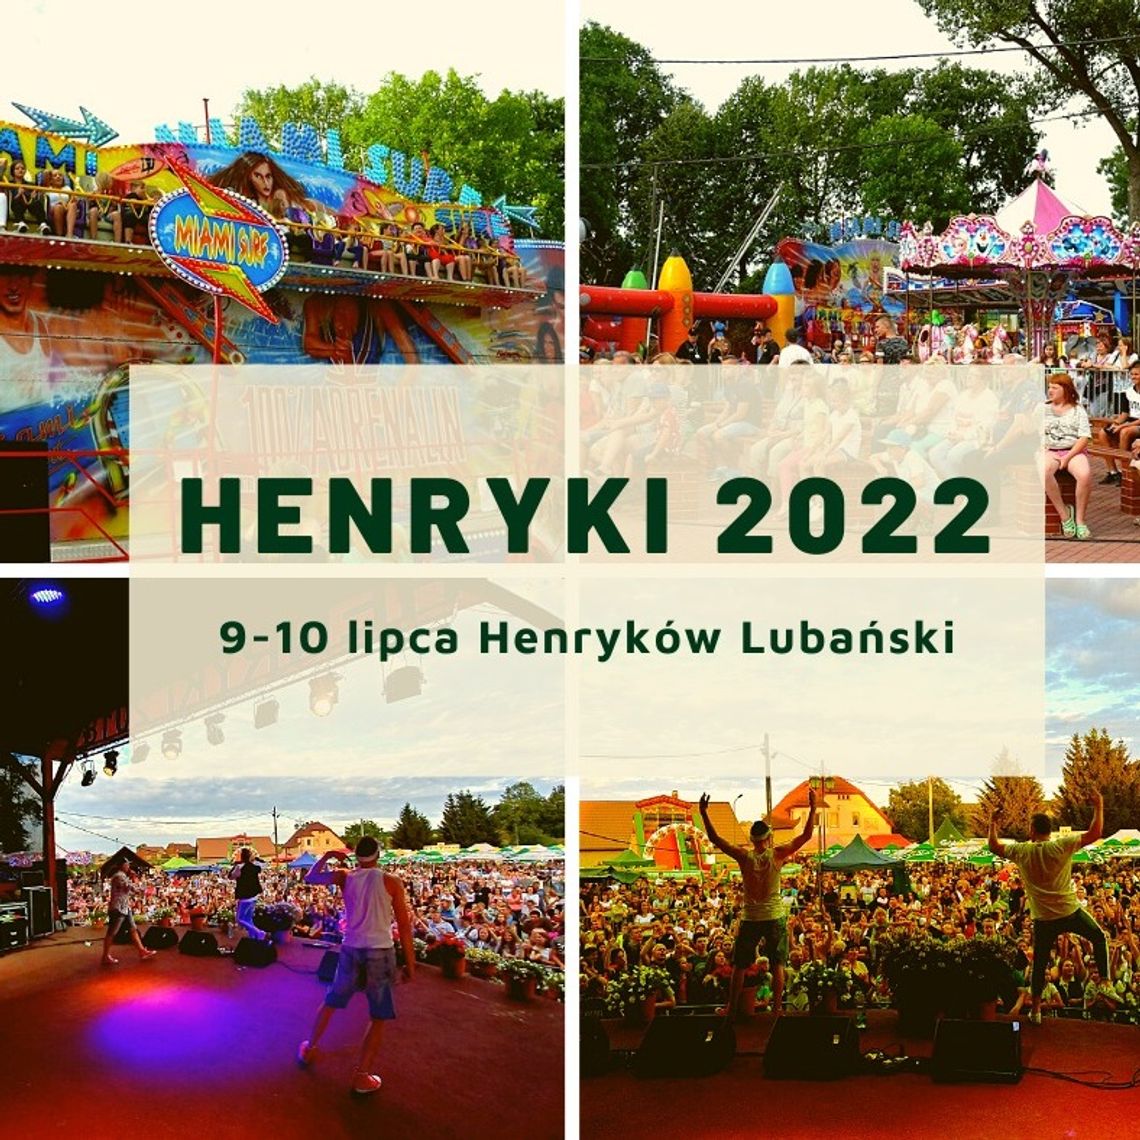 Henryki 2022 – Mlade Buky i stary cis 